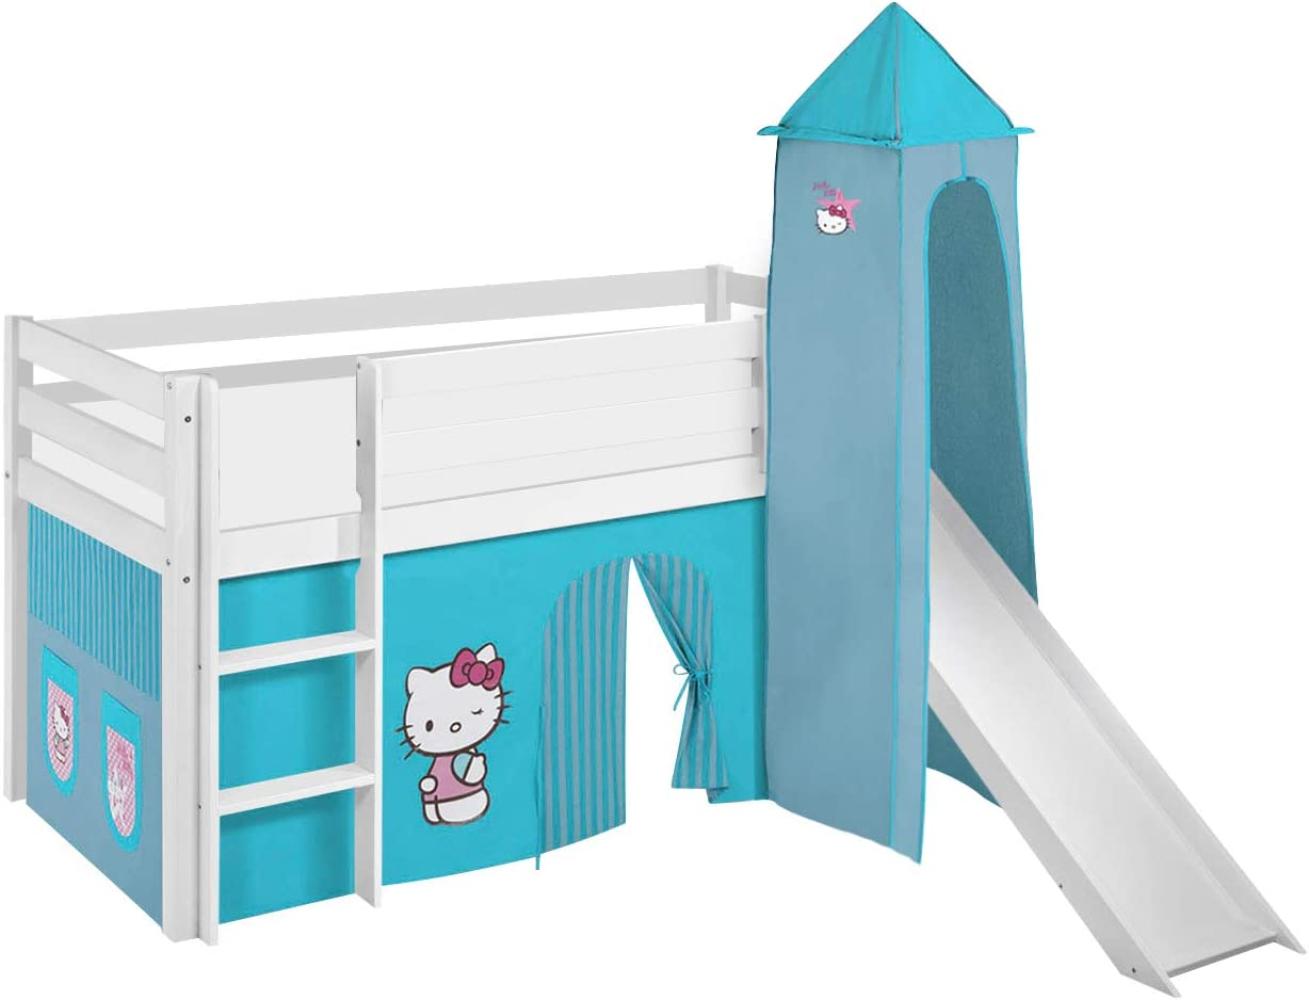 Lilokids 'Jelle' Spielbett 90 x 200 cm, Hello Kitty Türkis, Kiefer massiv, mit Turm, Rutsche und Vorhang Bild 1